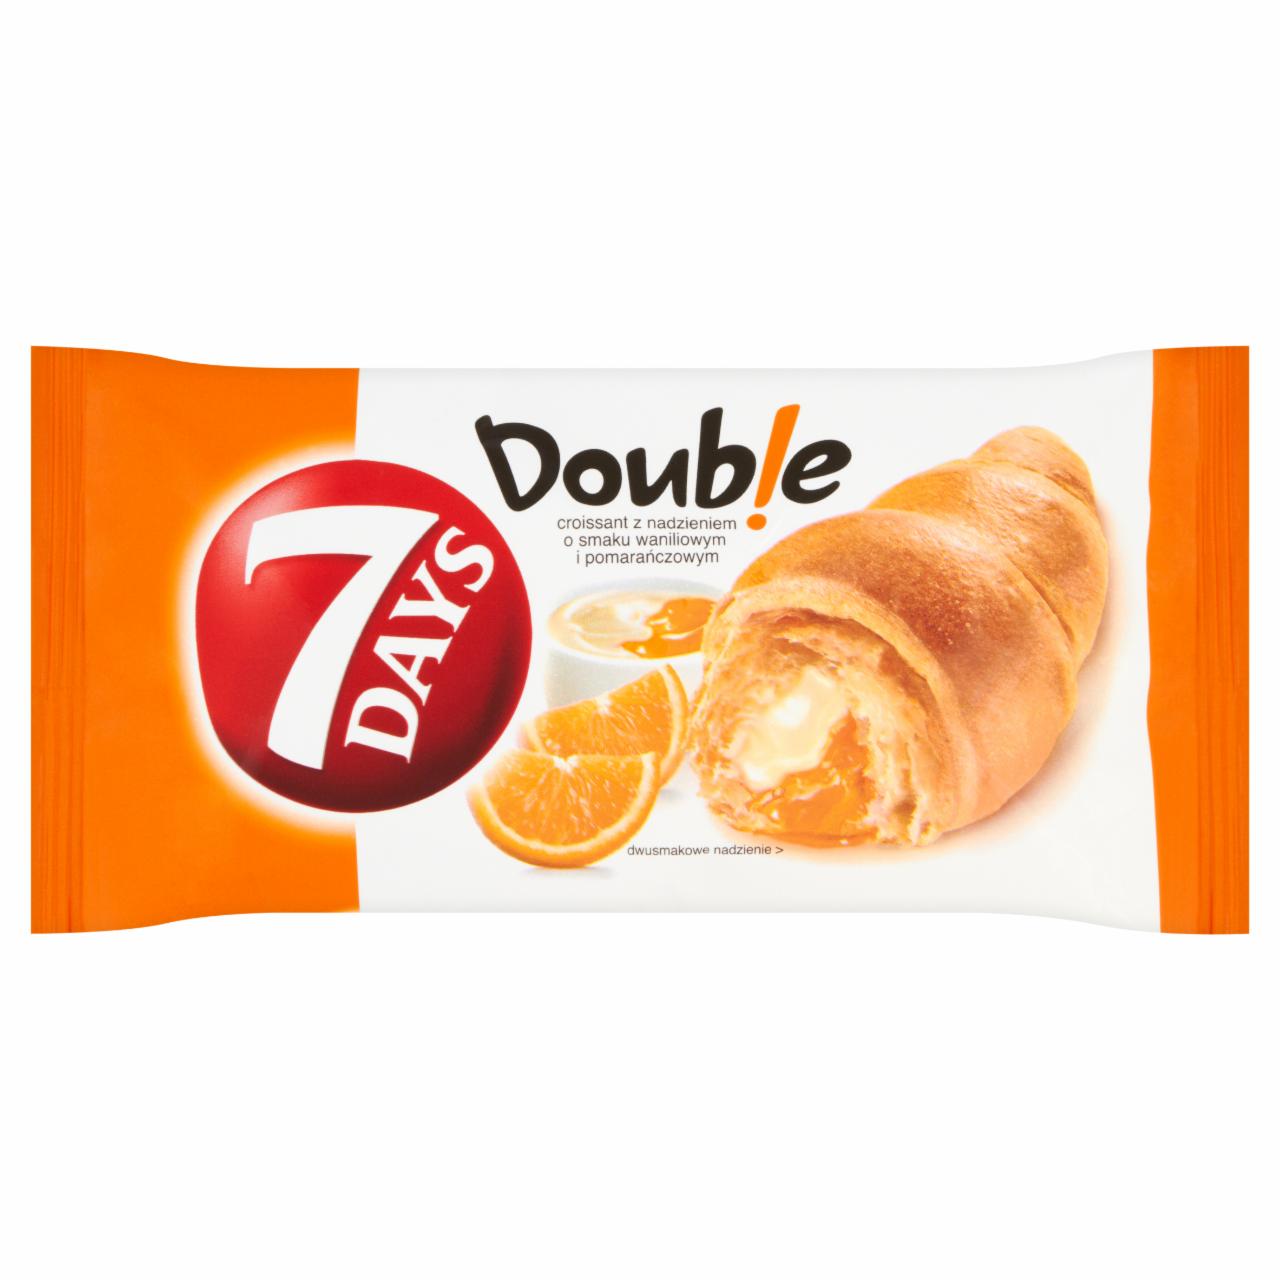 Zdjęcia - 7 Days Doub!e Croissant z nadzieniem o smaku waniliowym i pomarańczowym 80 g